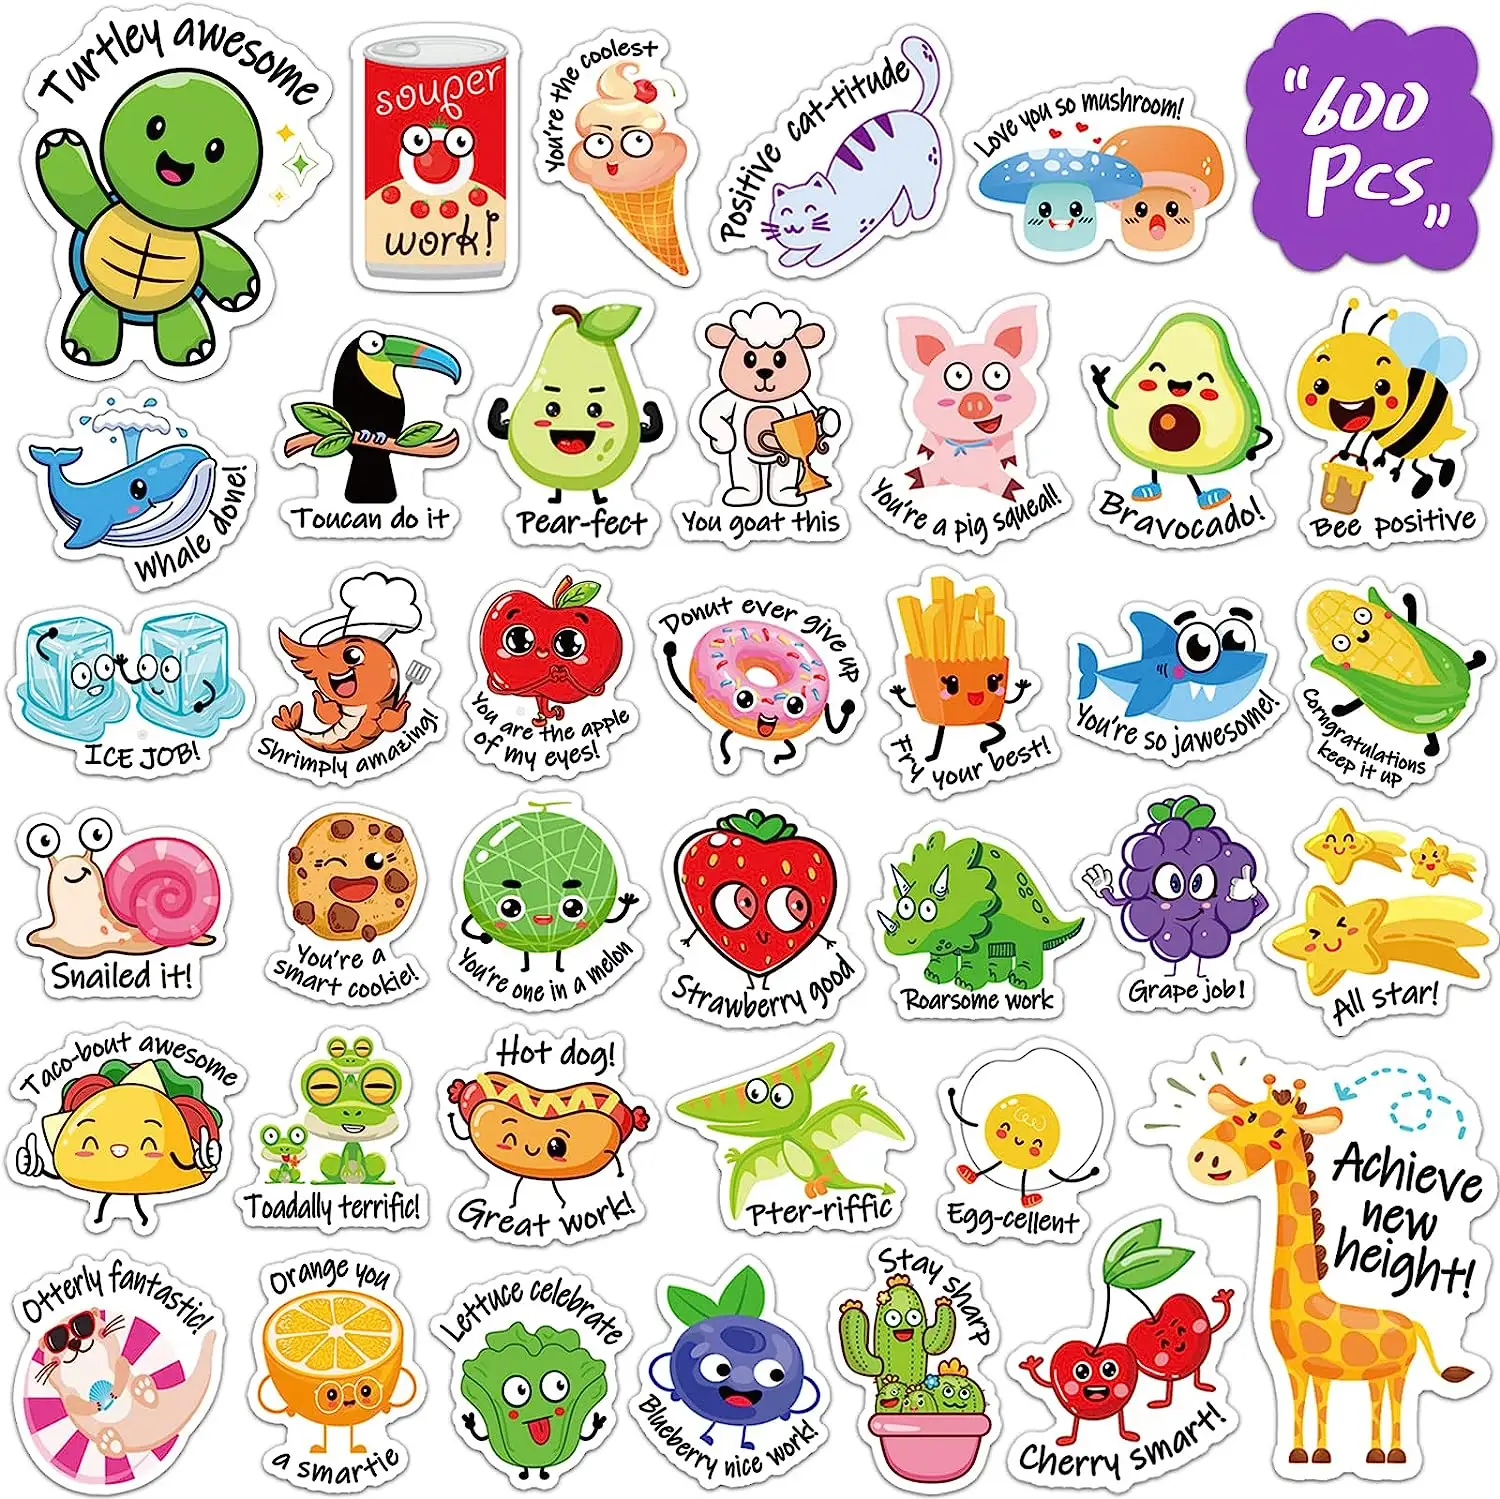 Stampa personalizzata premi per la scuola dei bambini adesivi per animali dei cartoni animati fogli adesivi in carta vinilica etichetta adesiva per cartoni animati